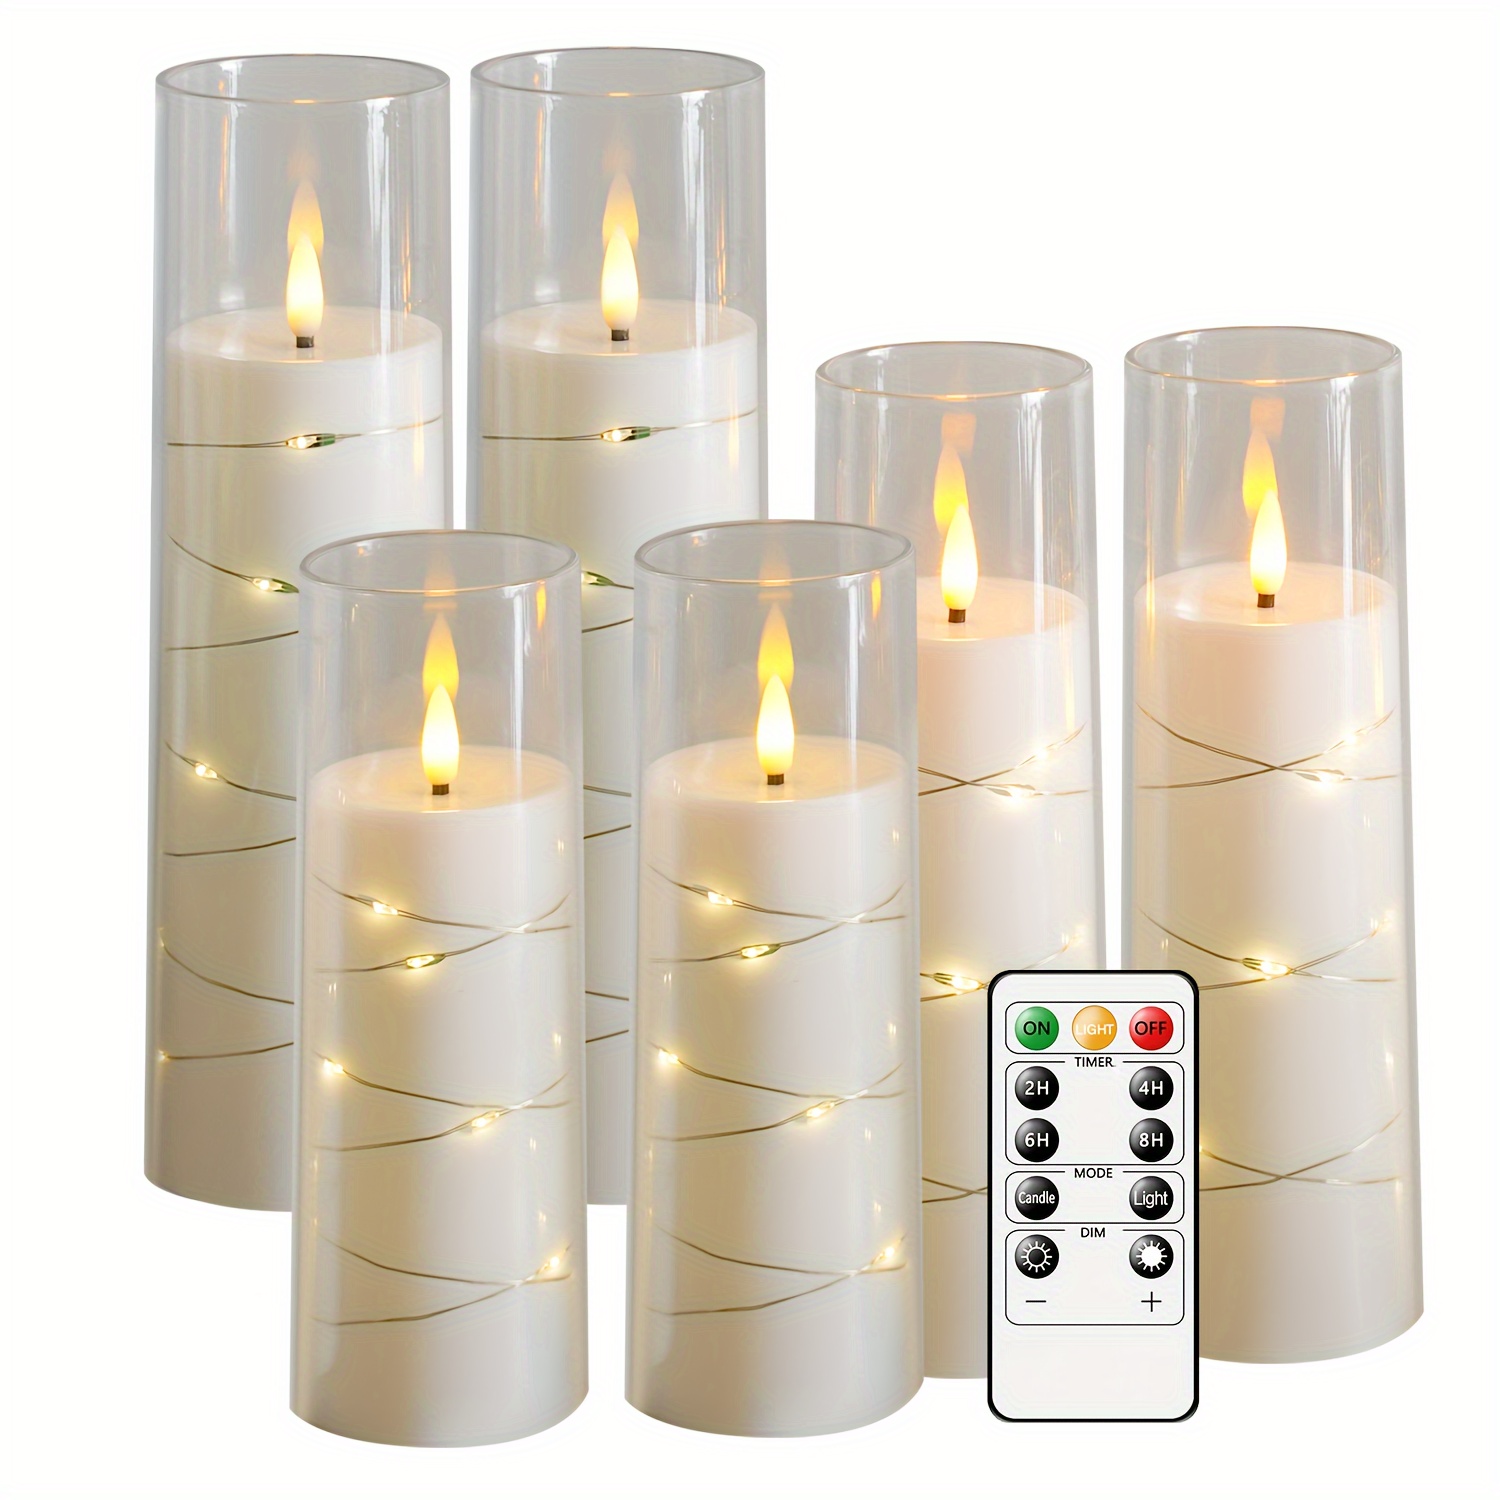 FREEPOWER 3 Bougies LED Or avec Guirlande Lumineuse, avec Télécommande  Minuterie, Flamme Vacillante, Fonctionne sur Piles, Sans Flamme, Blanc  Chaud